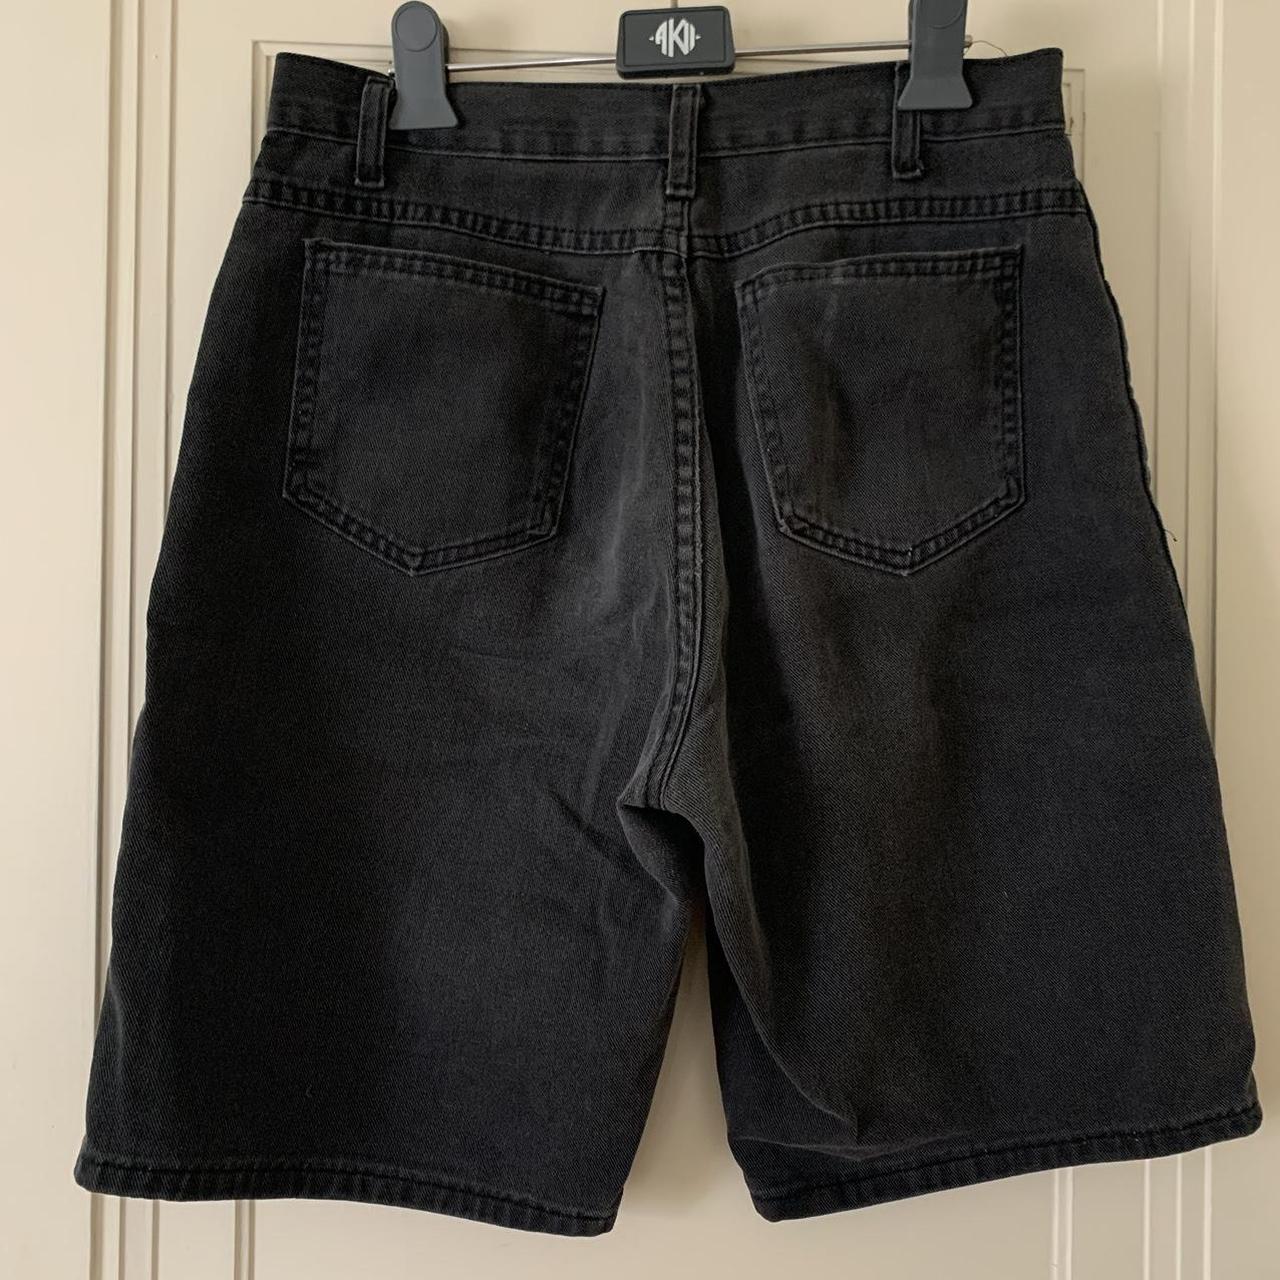 🌱 vintage board shorts 🌱 black denim knee-length... - Depop